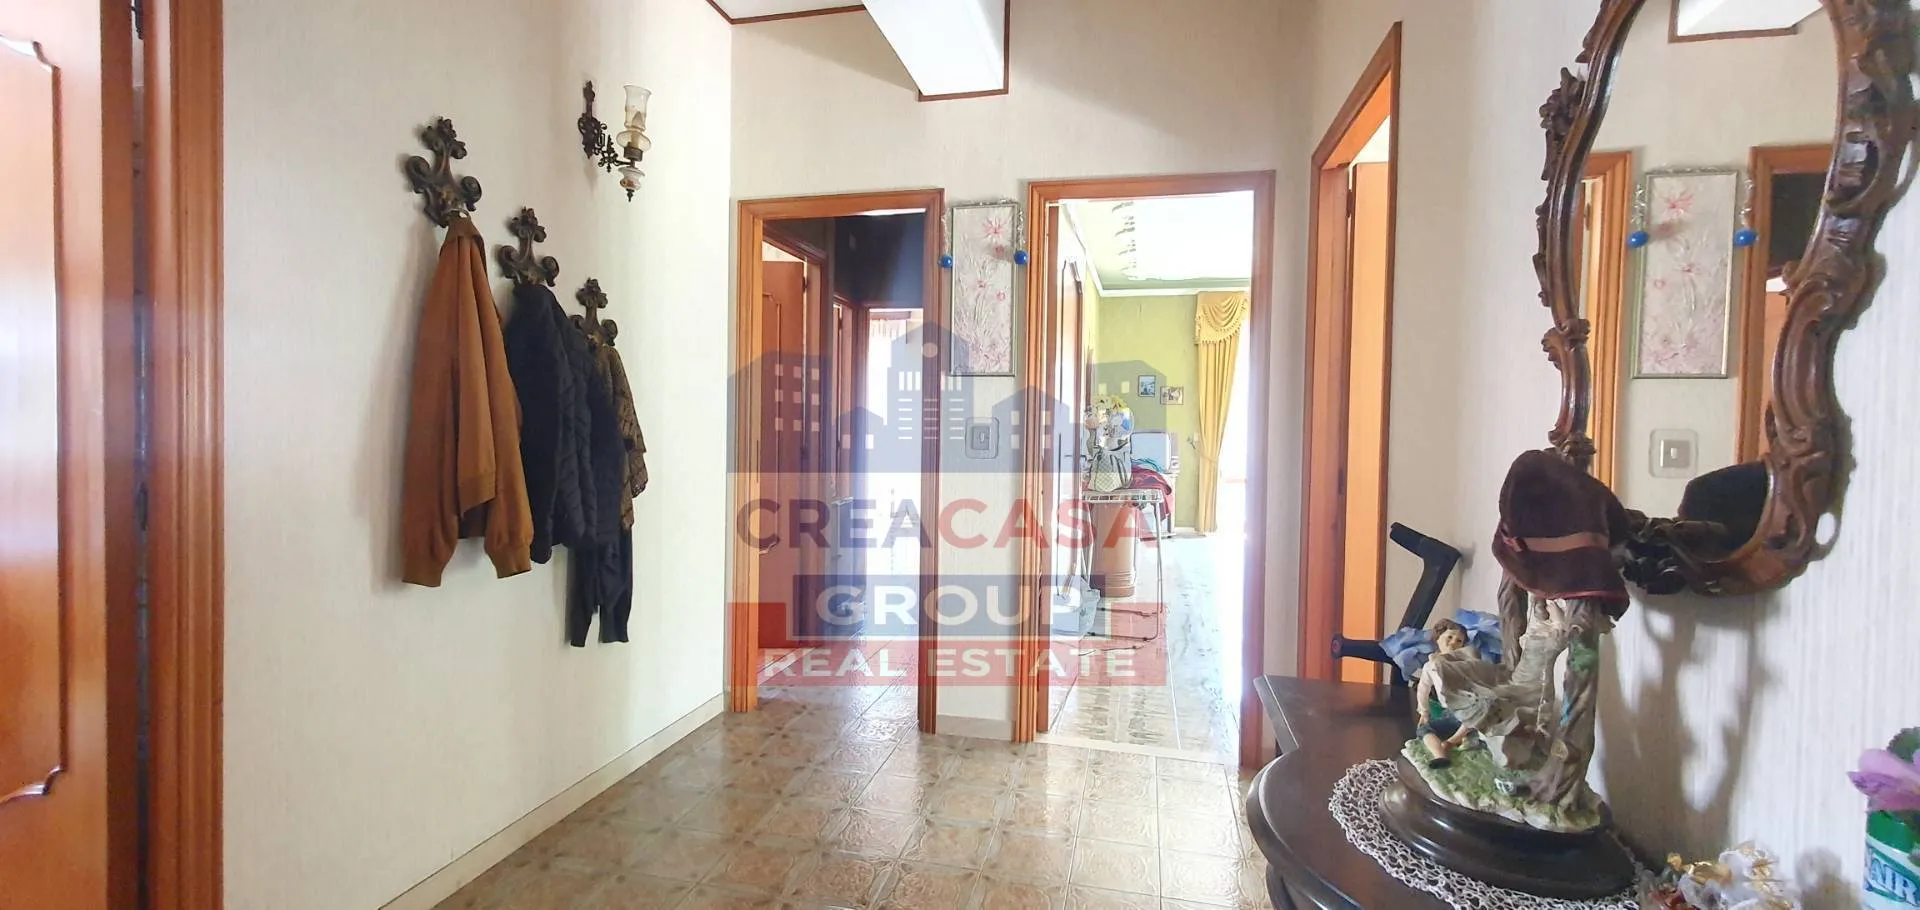 Immagine per Appartamento in vendita a Francavilla di Sicilia VINCENZO BELLINI